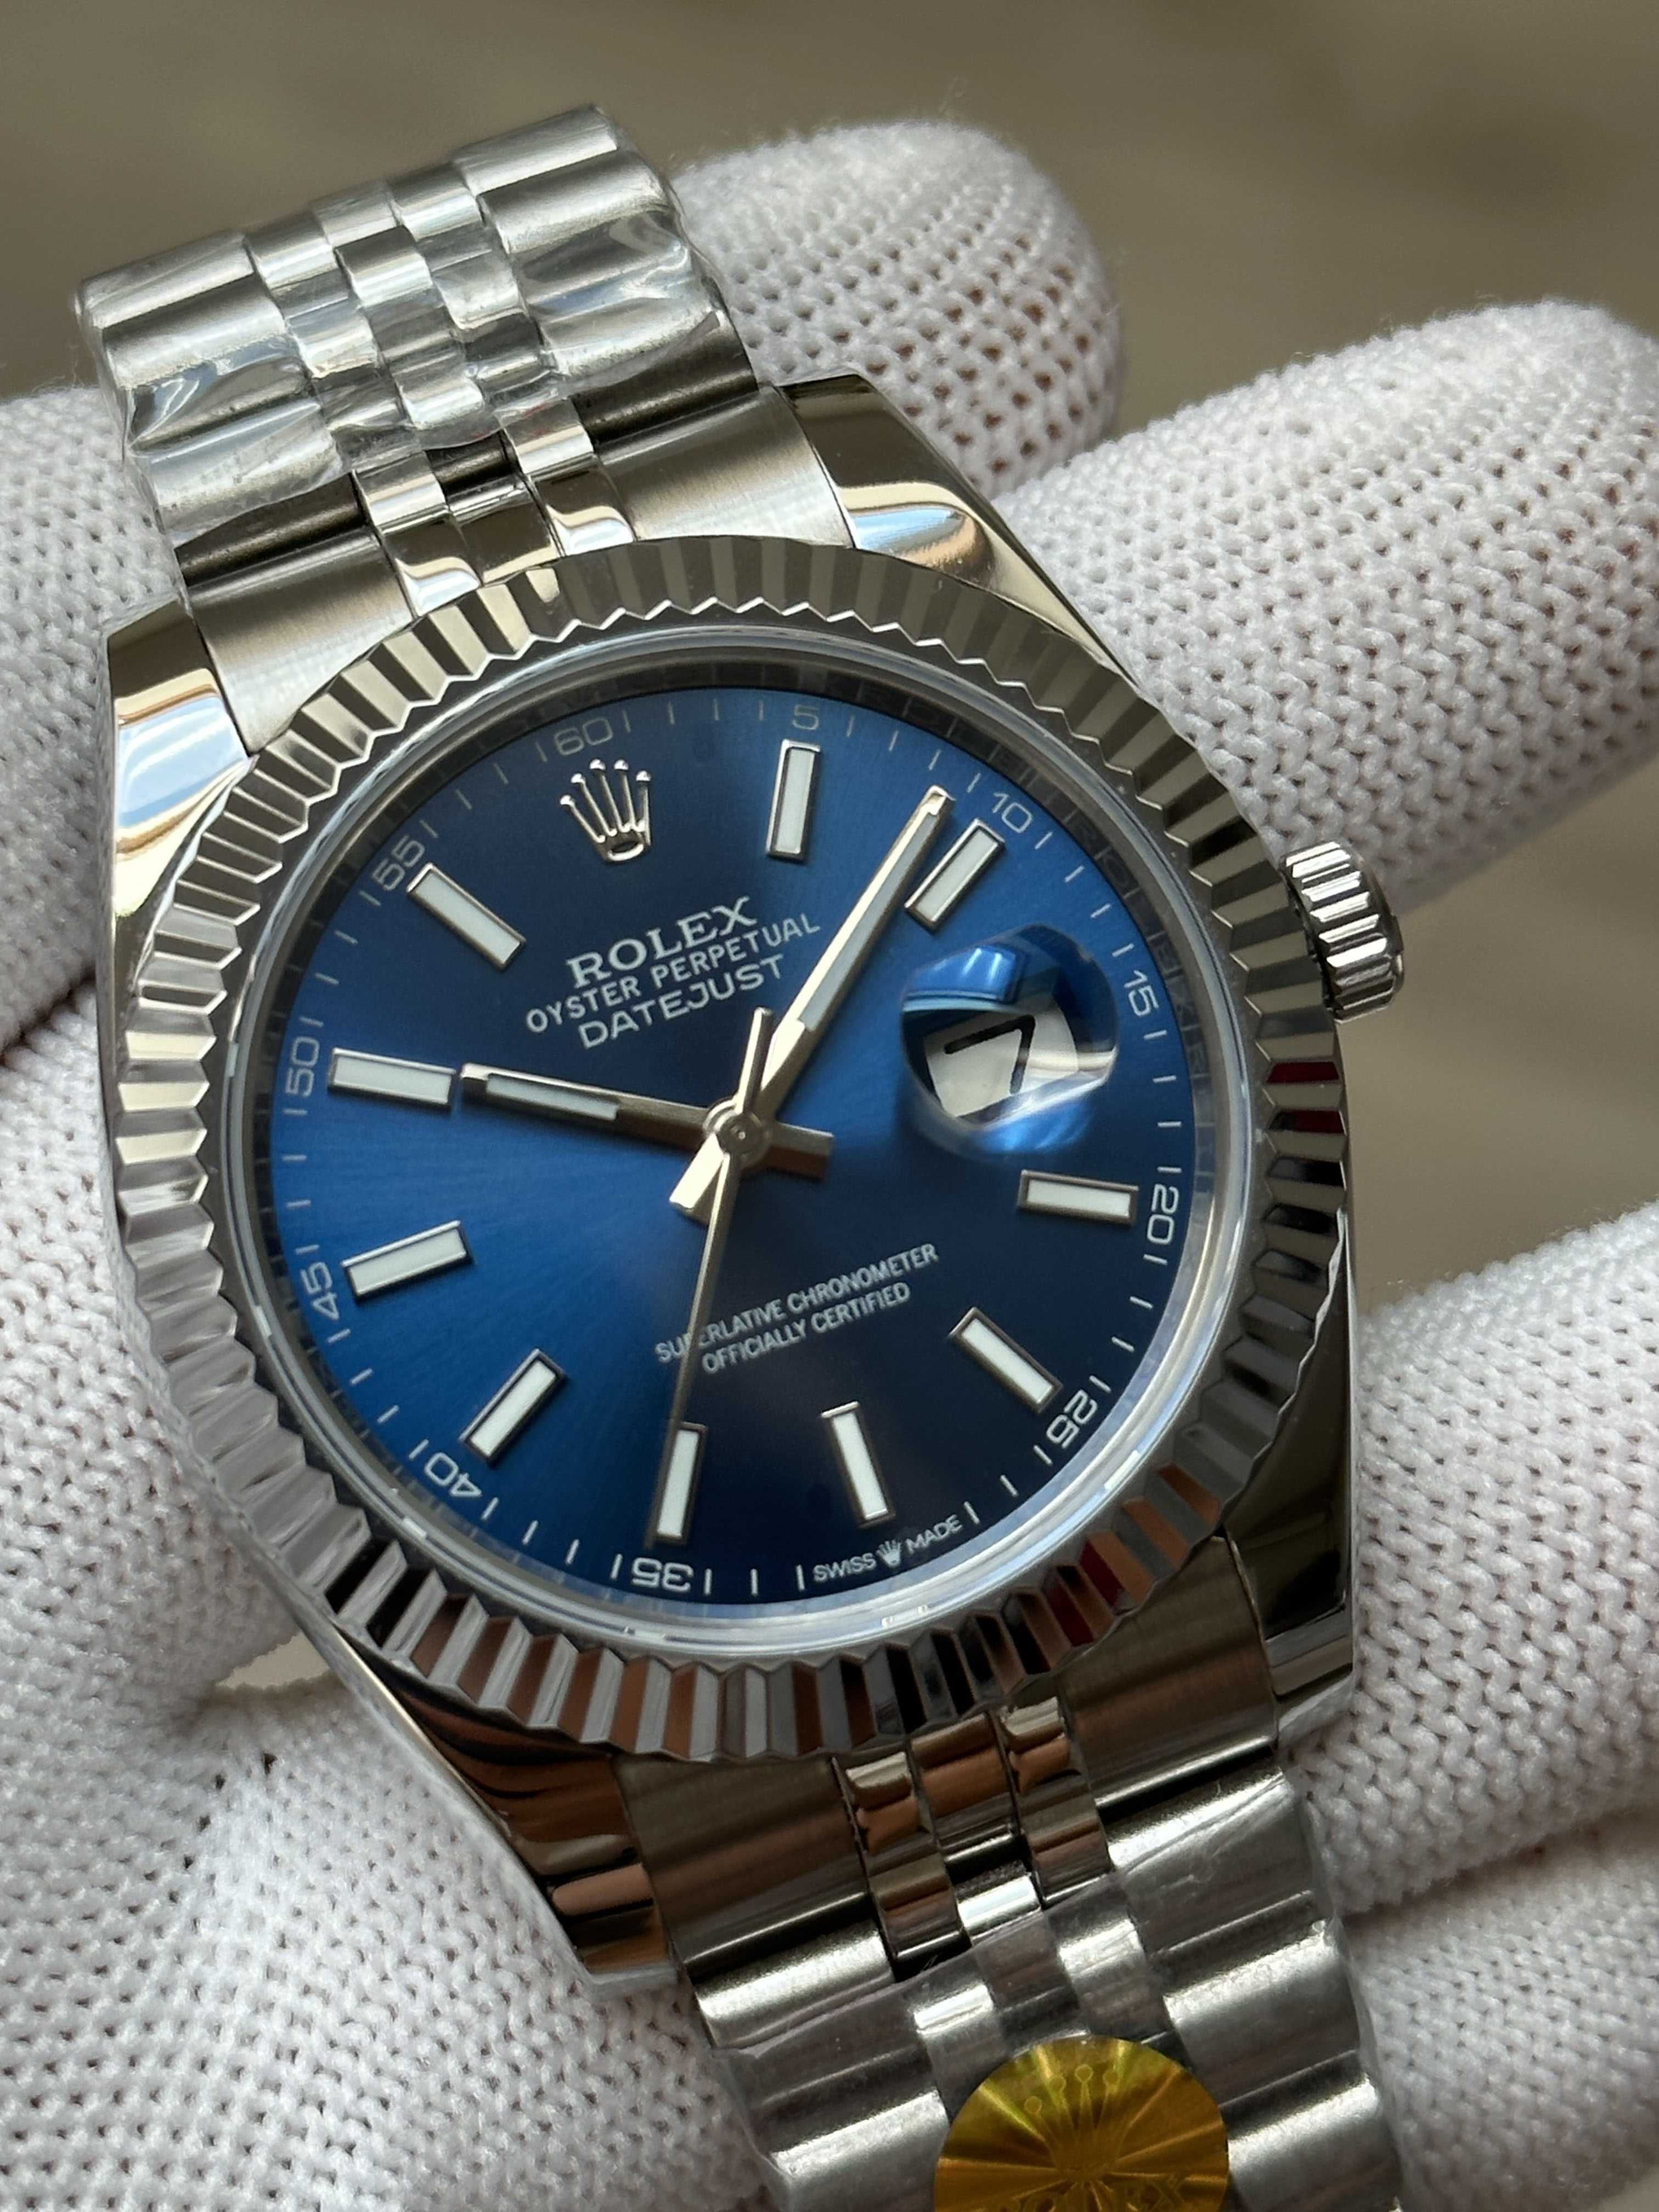 Швейцарские часы Rolex Datejust Silver-Blue. Топ качество